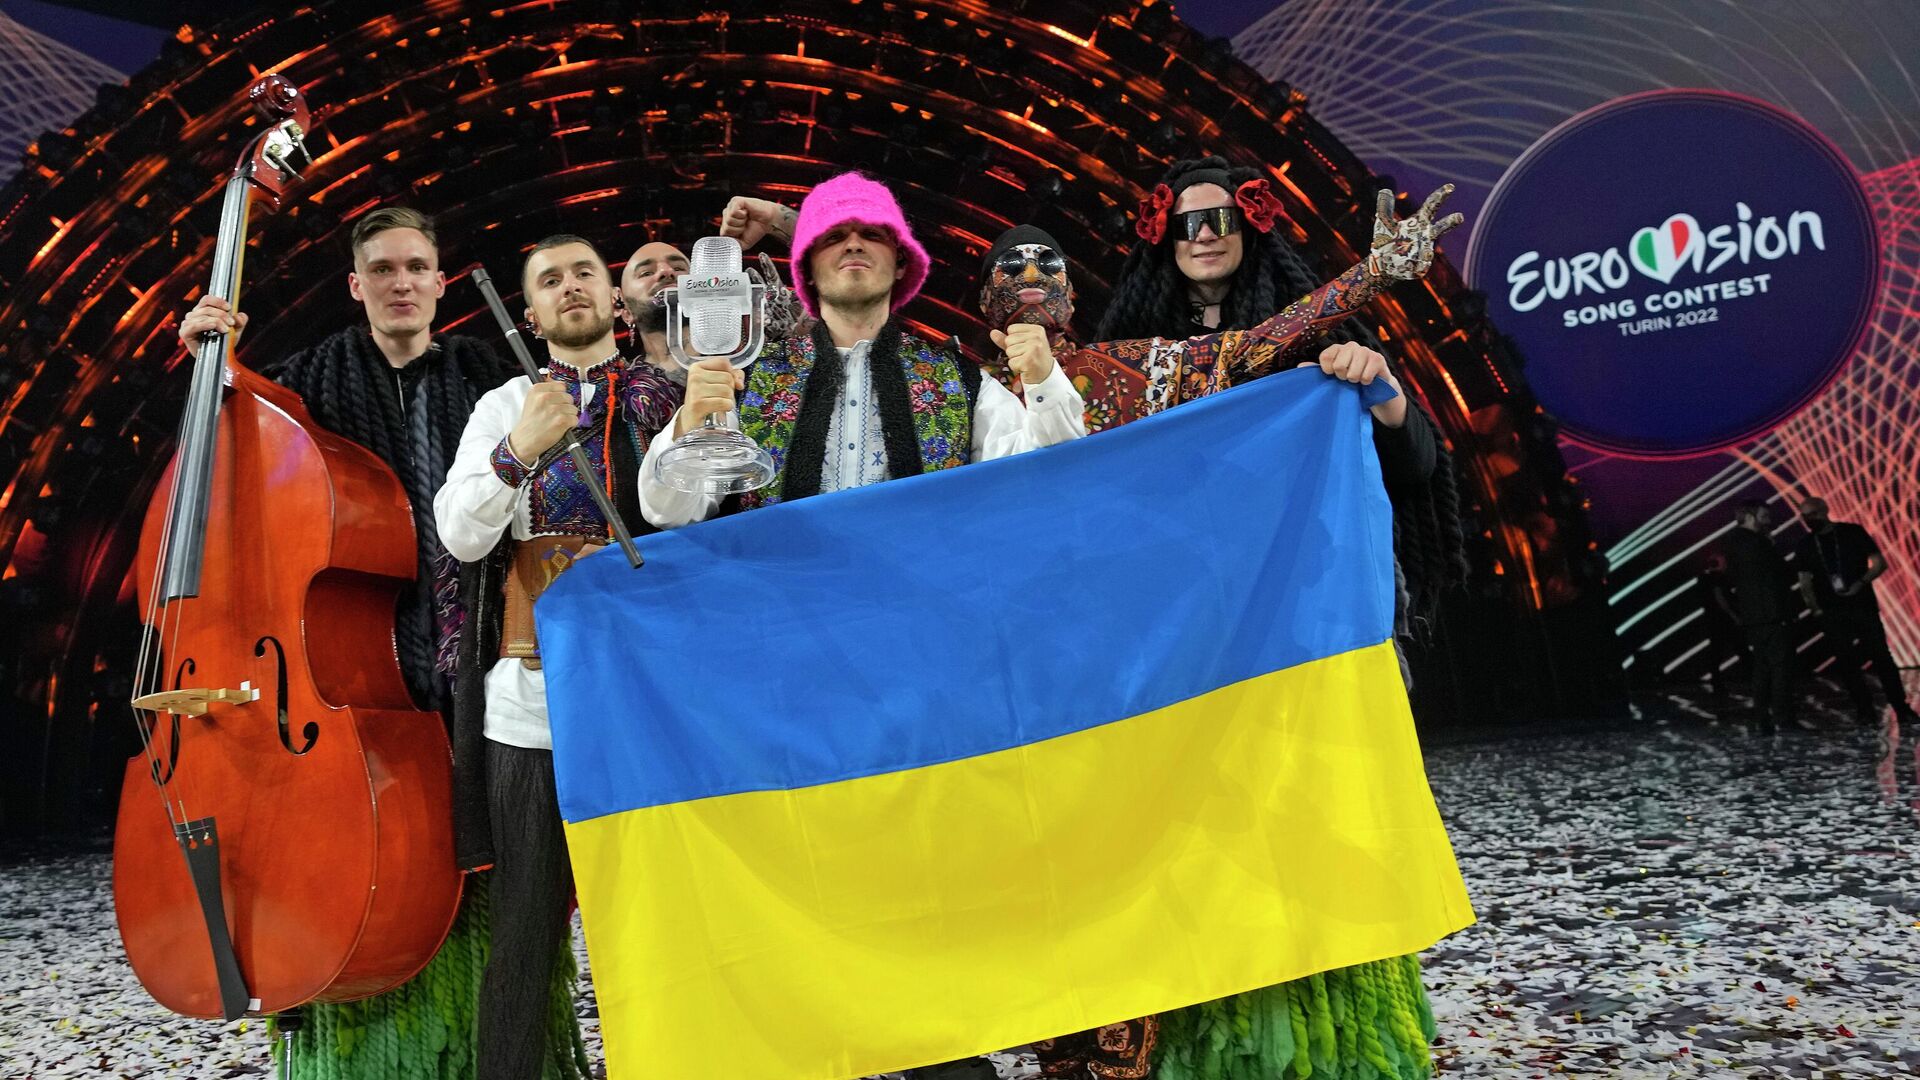 Украјински бенд Калуш, победник Песме Евровизије 2022. - Sputnik Србија, 1920, 15.05.2022